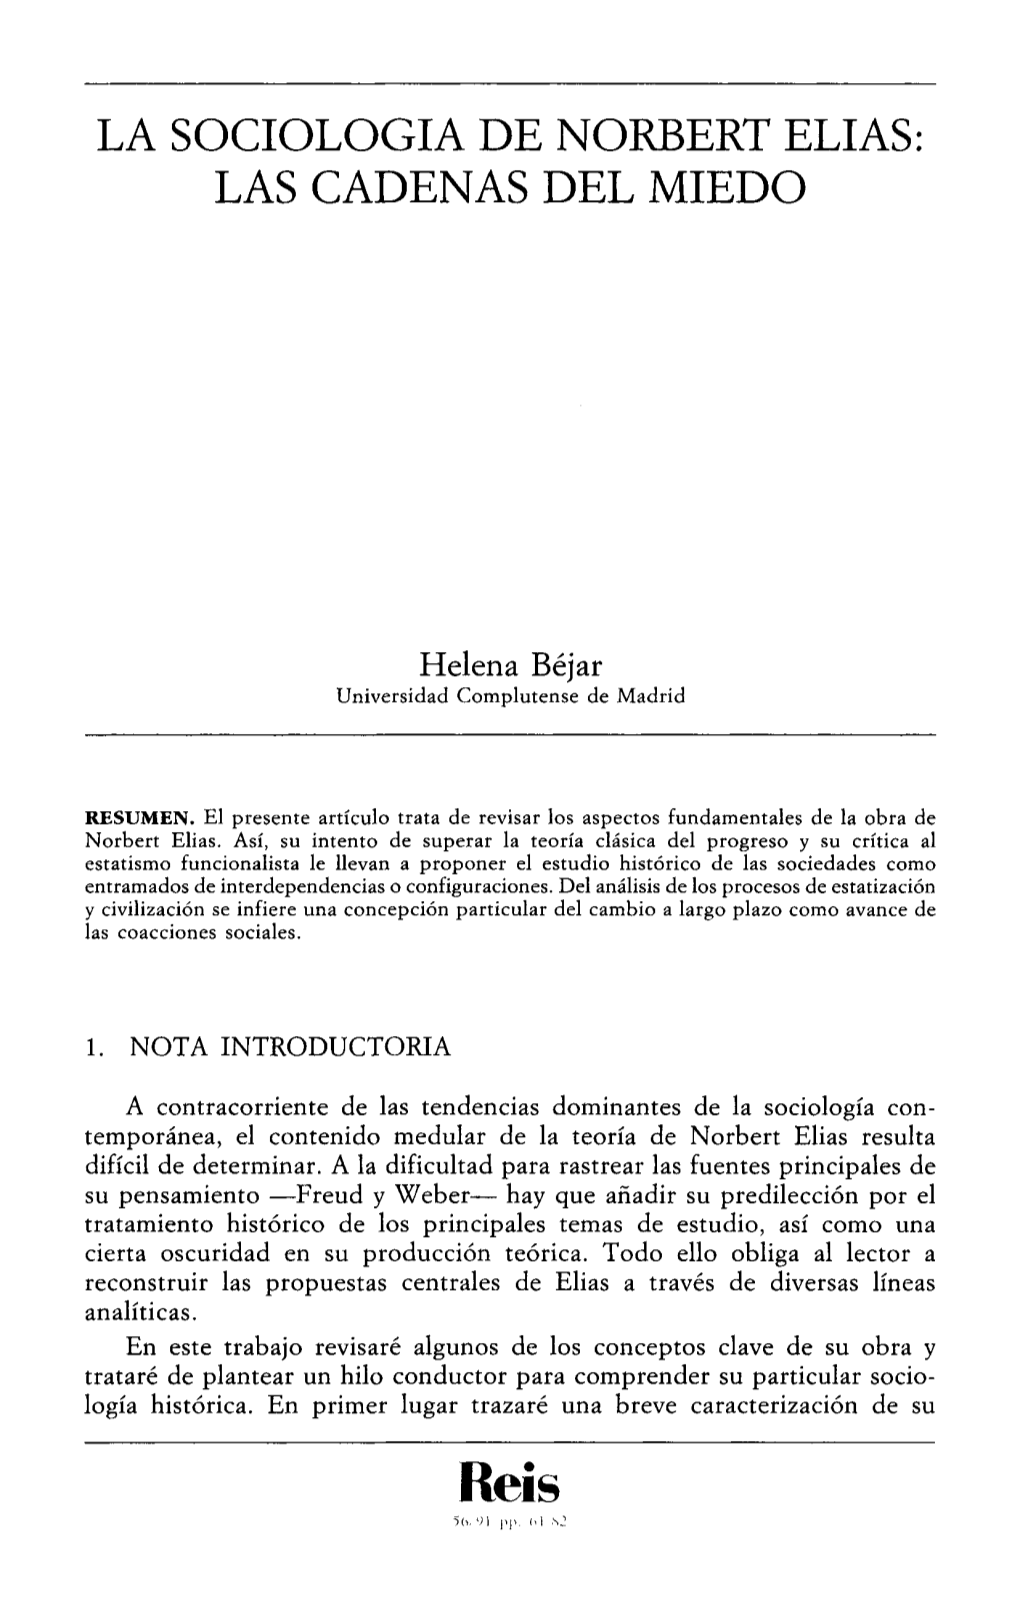 La Sociología De Norbert Elías: Las Cadenas Del Miedo. Bejar Merino, Helena. (REIS Nº 56. ESTUDIOS)